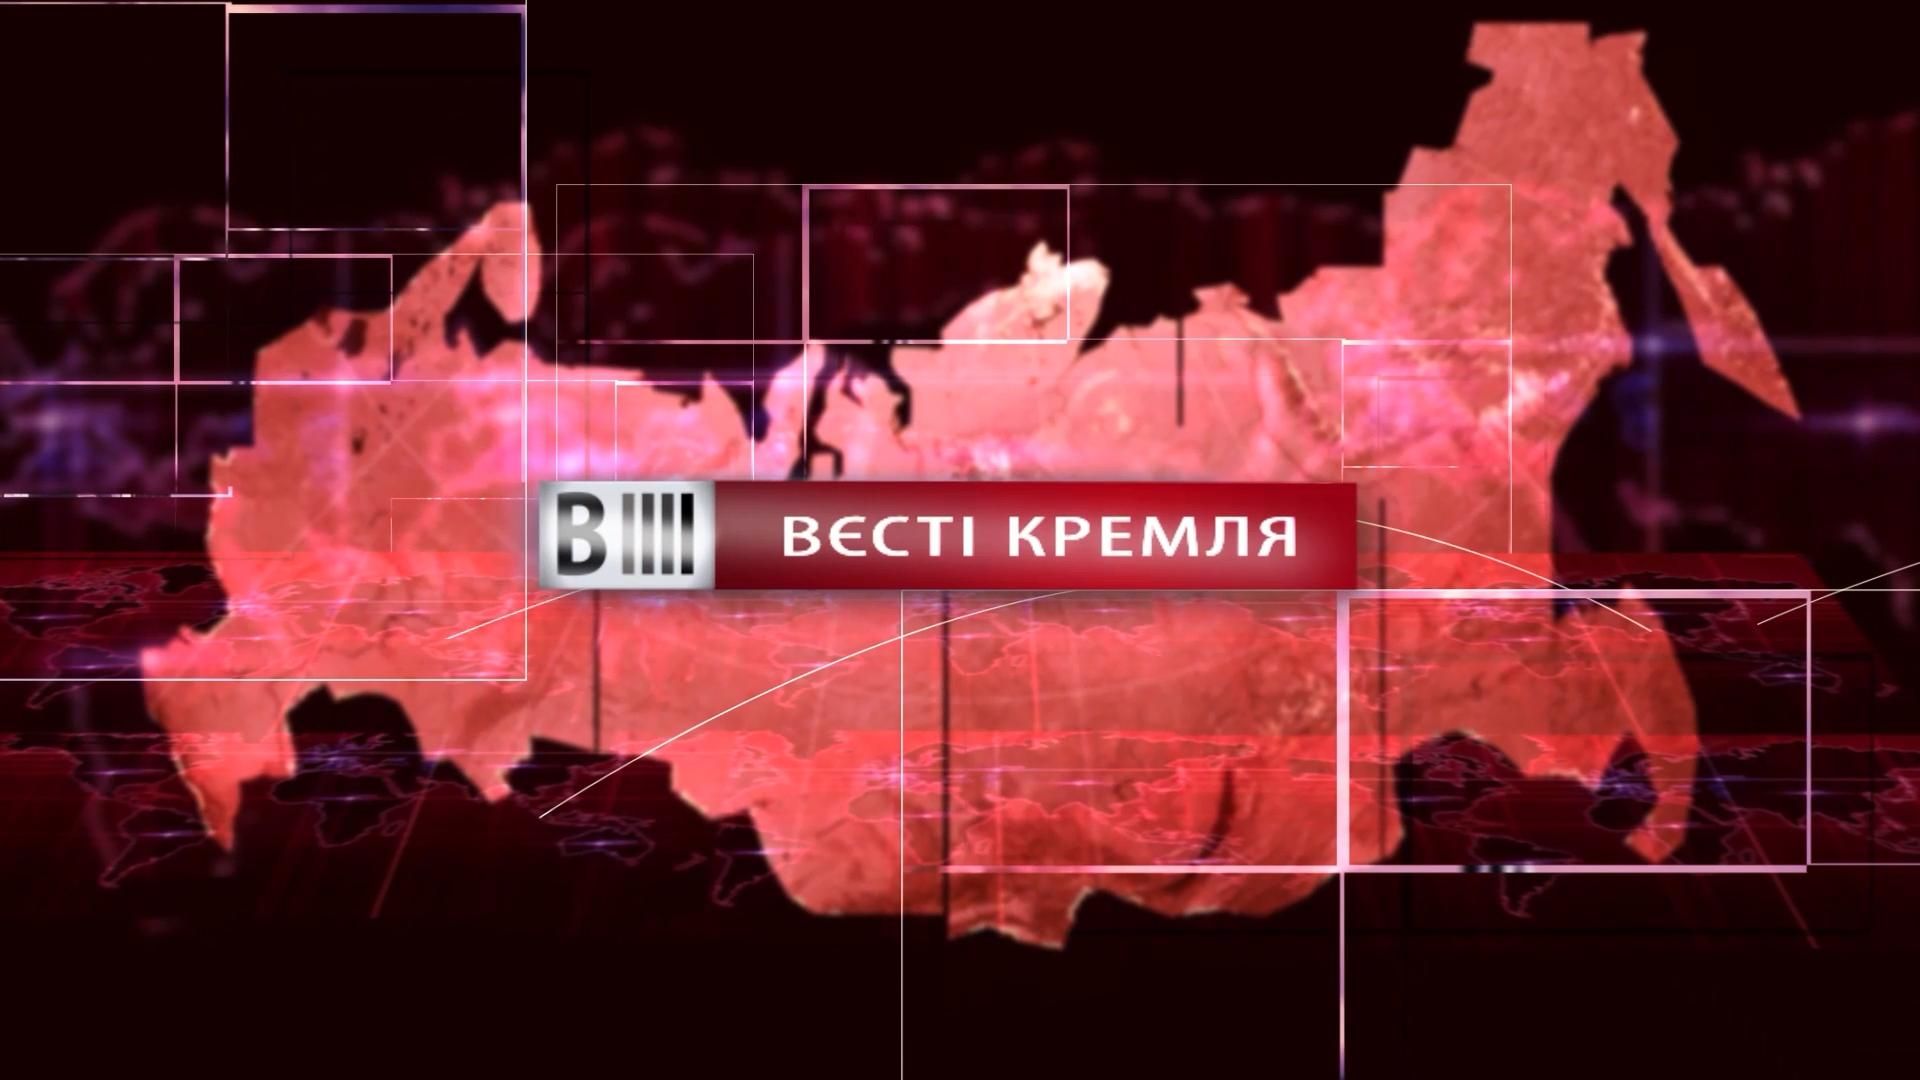 Смотрите "Вести Кремля". Нимб для Собчак. Гендерное равенство брюк